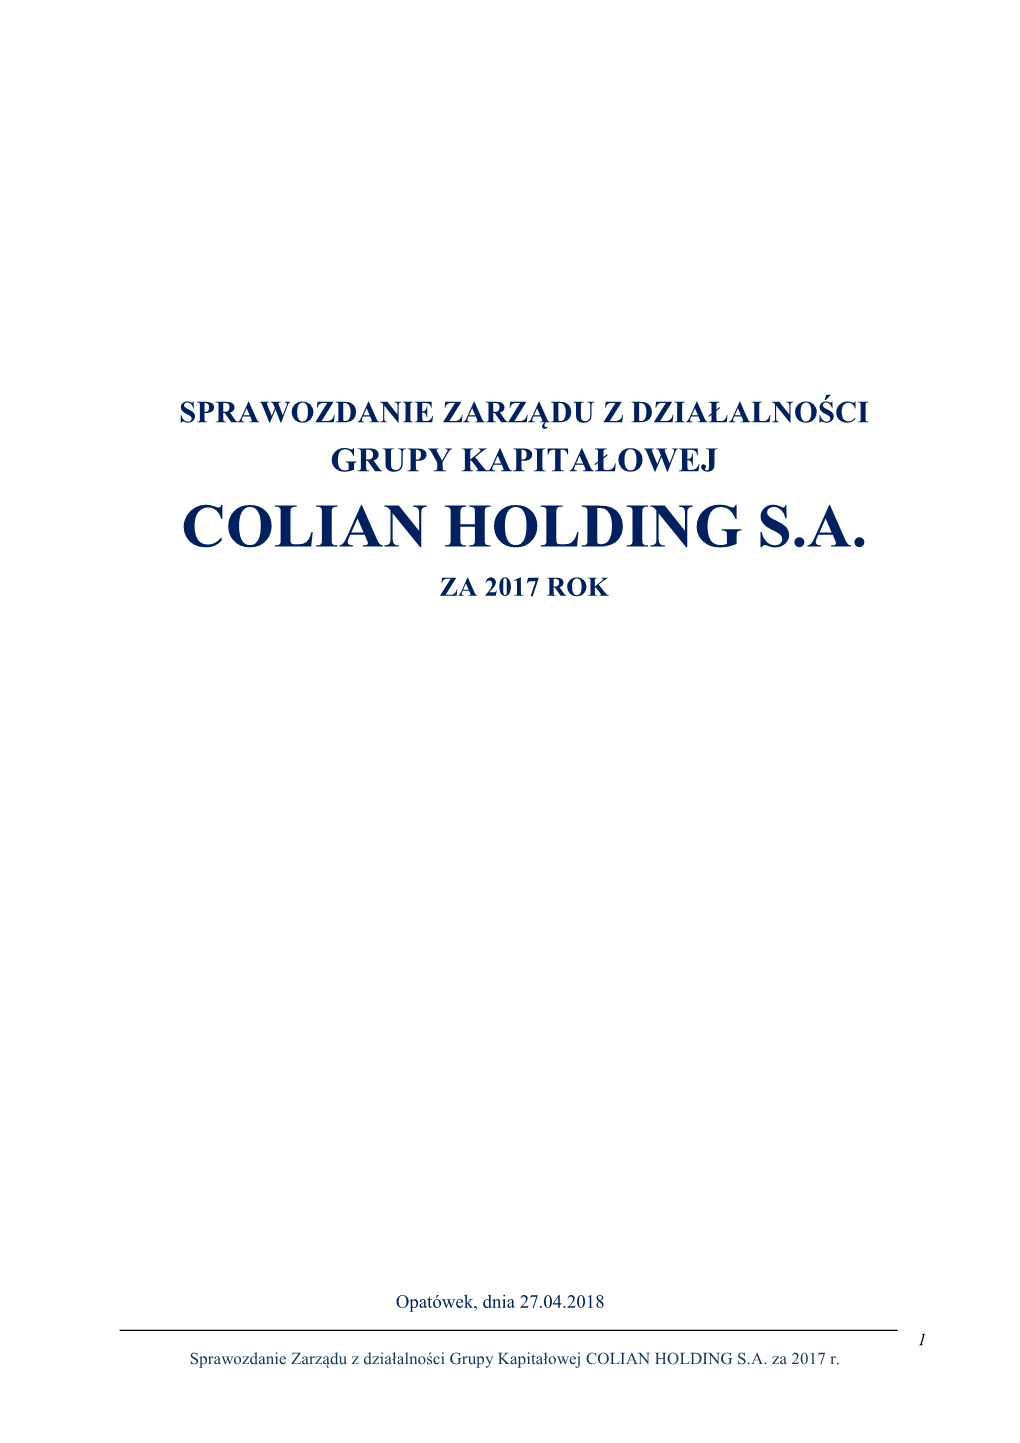 Sprawozdanie Zarządu Z Działalności Grupy Kapitałowej Colian Holding